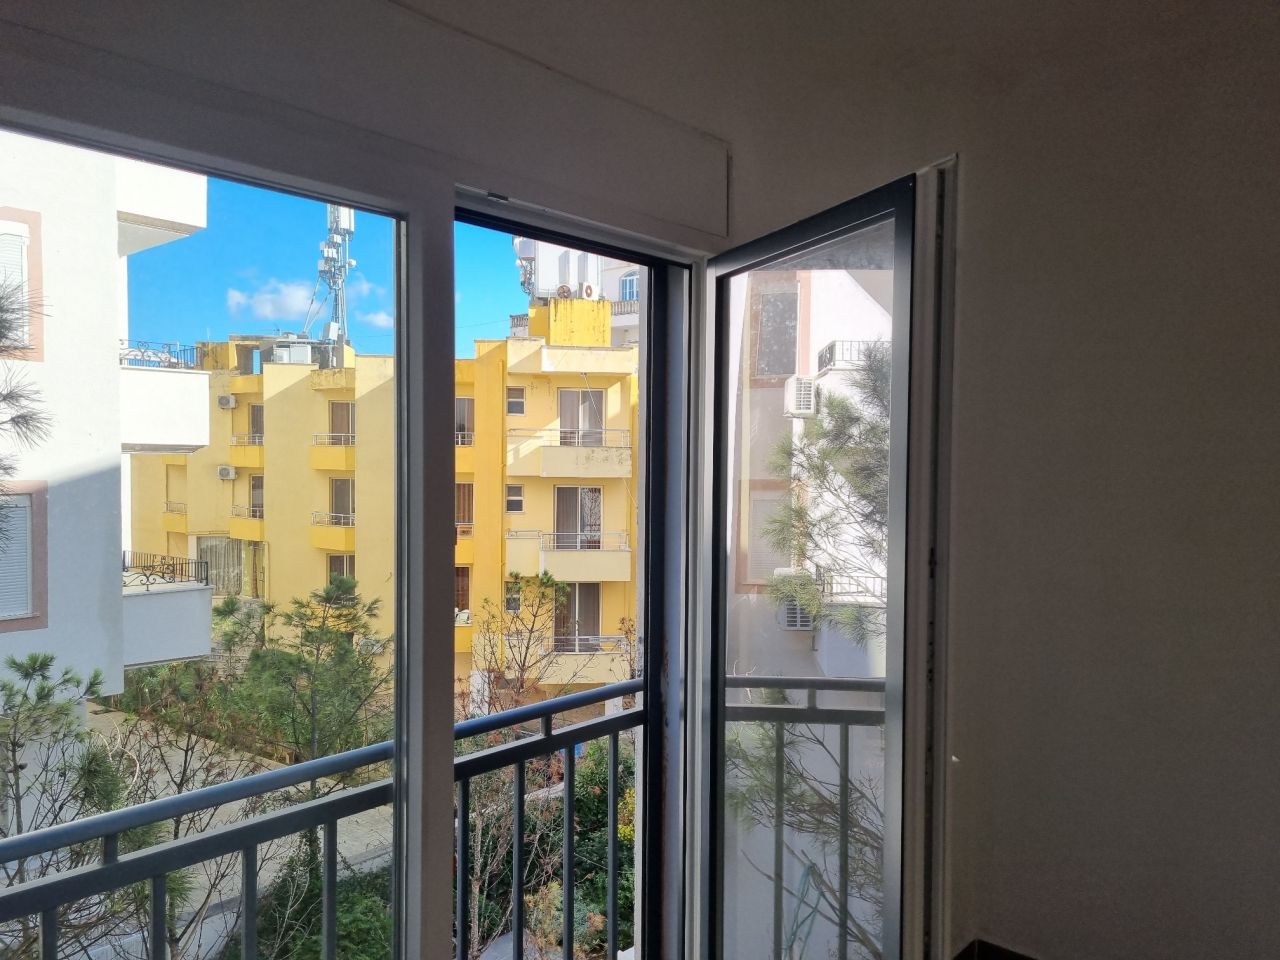 Wohnung Zum Verkauf In Qerret Durres, Albanien, In Einer Guten Gegend, Nahe Dem Strand